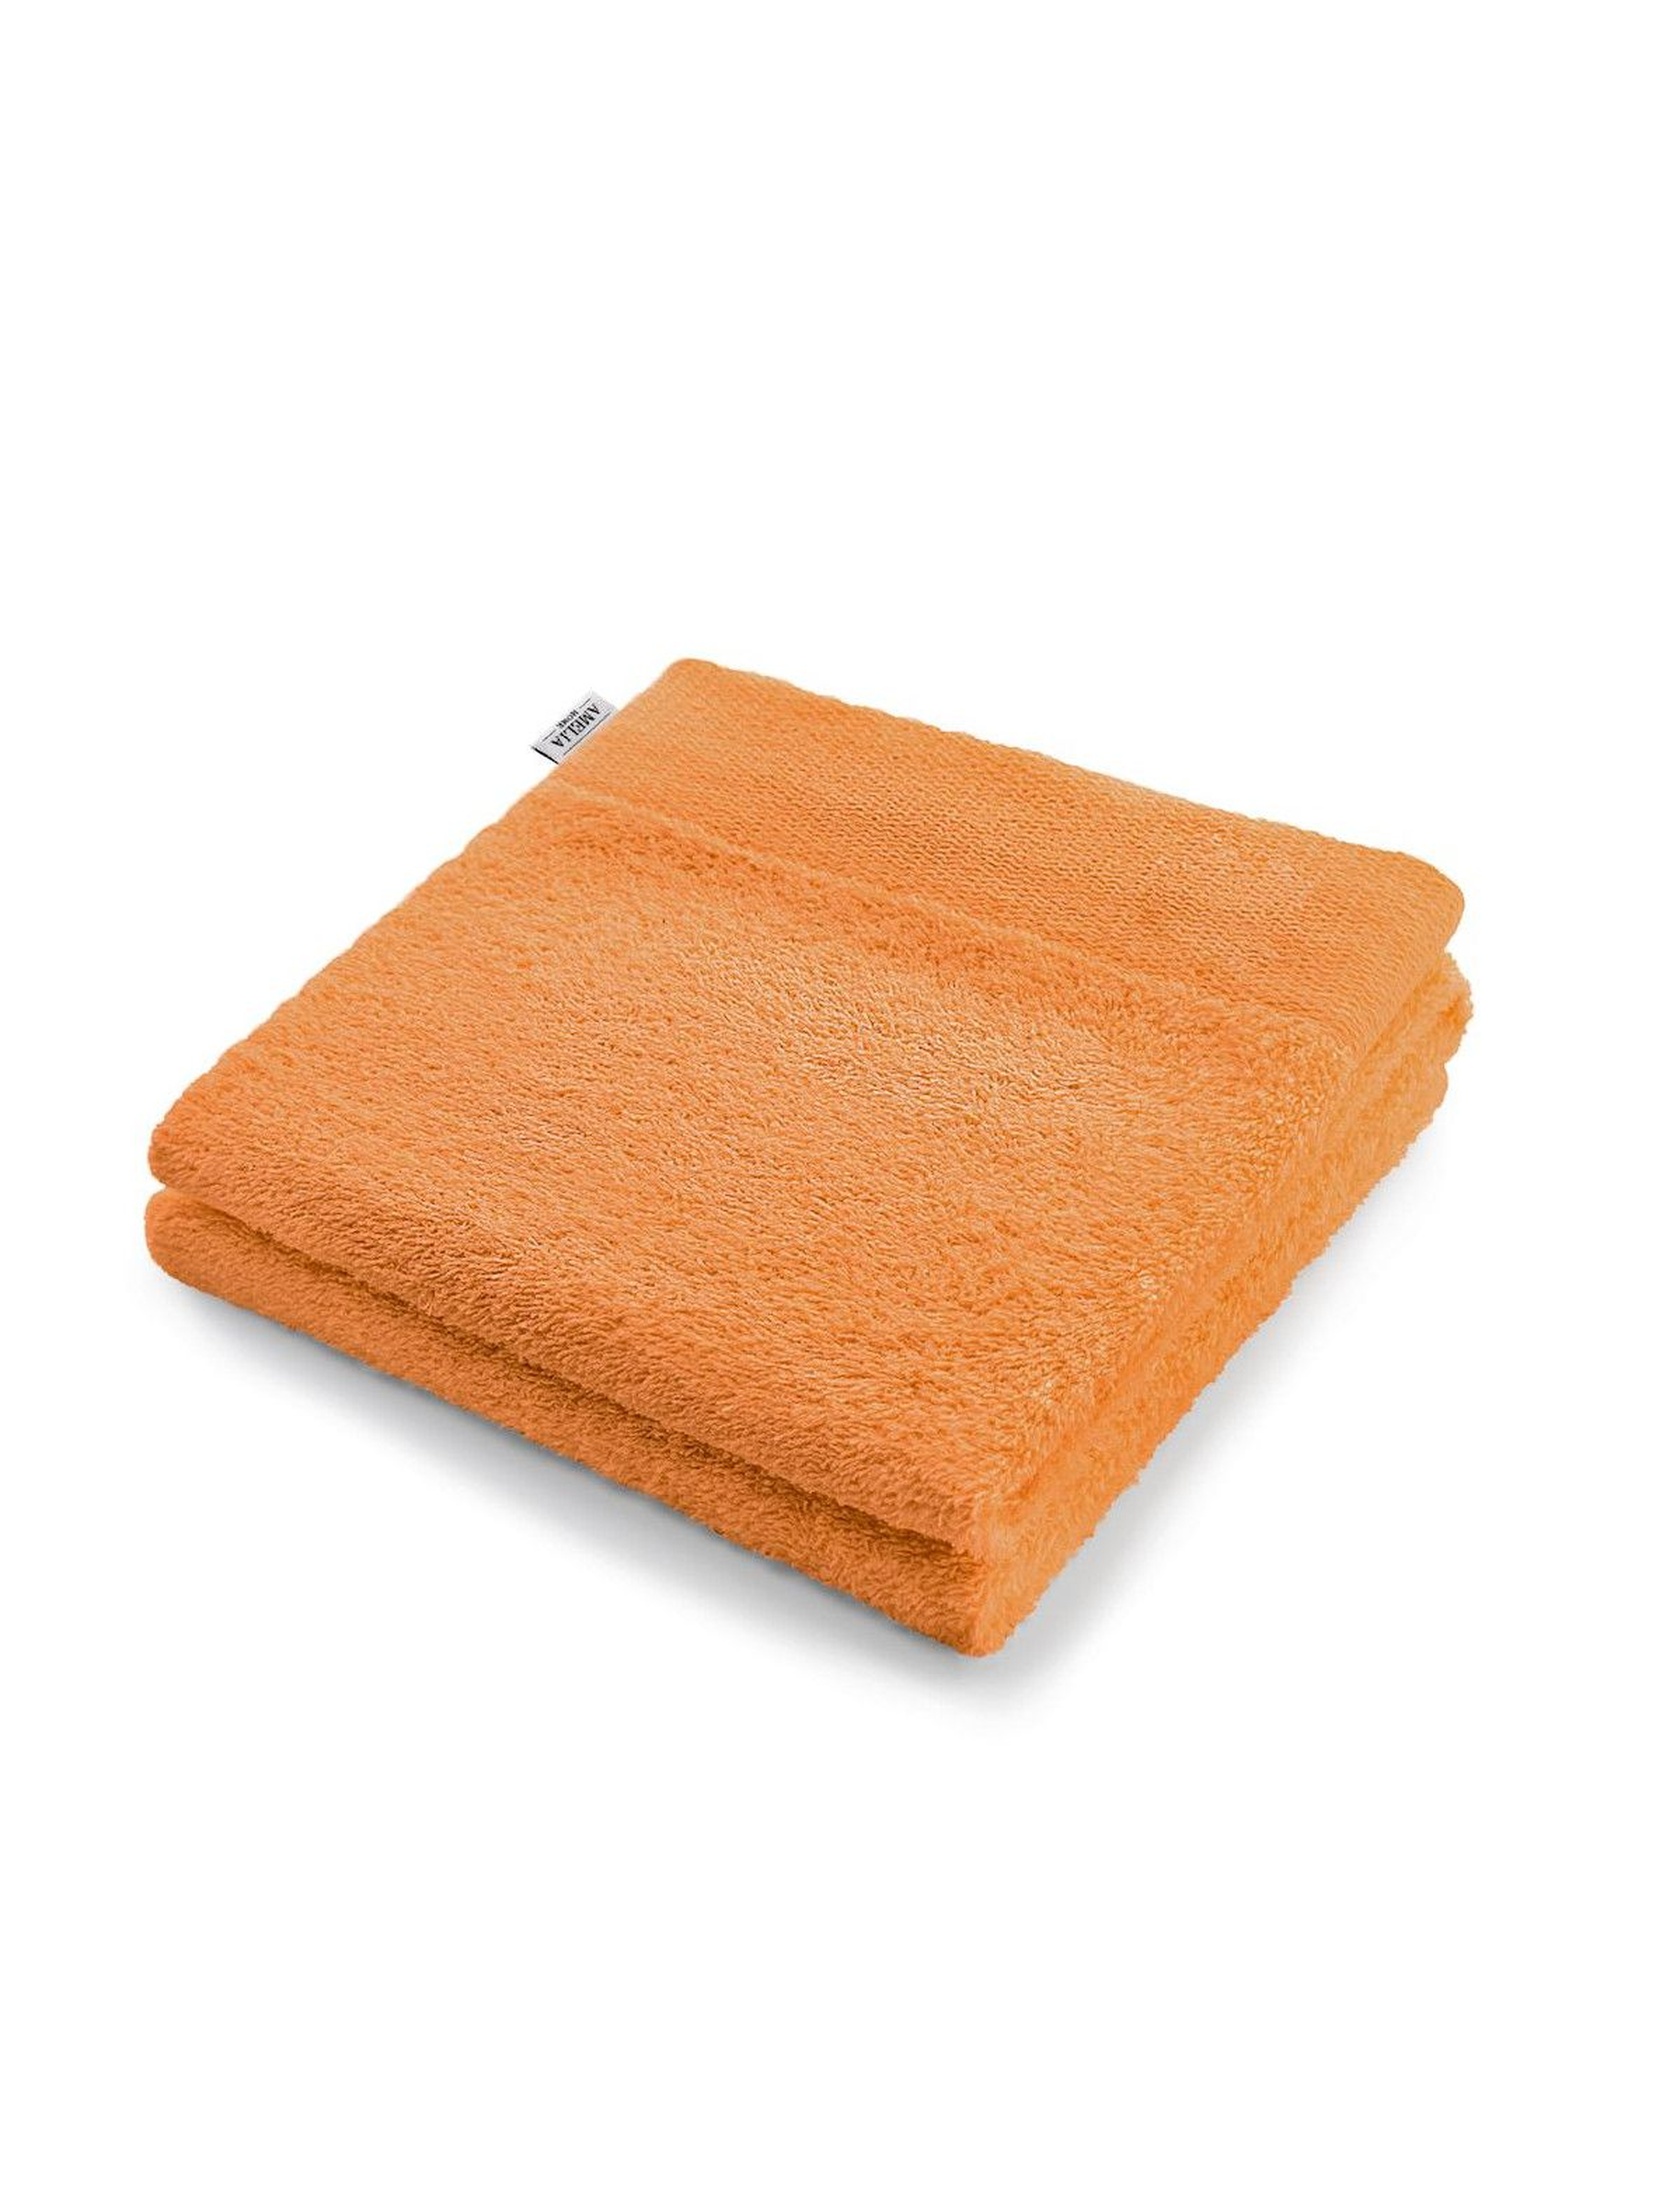 Ręcznik bawełniany AmeliaHome pomarańczowy - 70x140cm